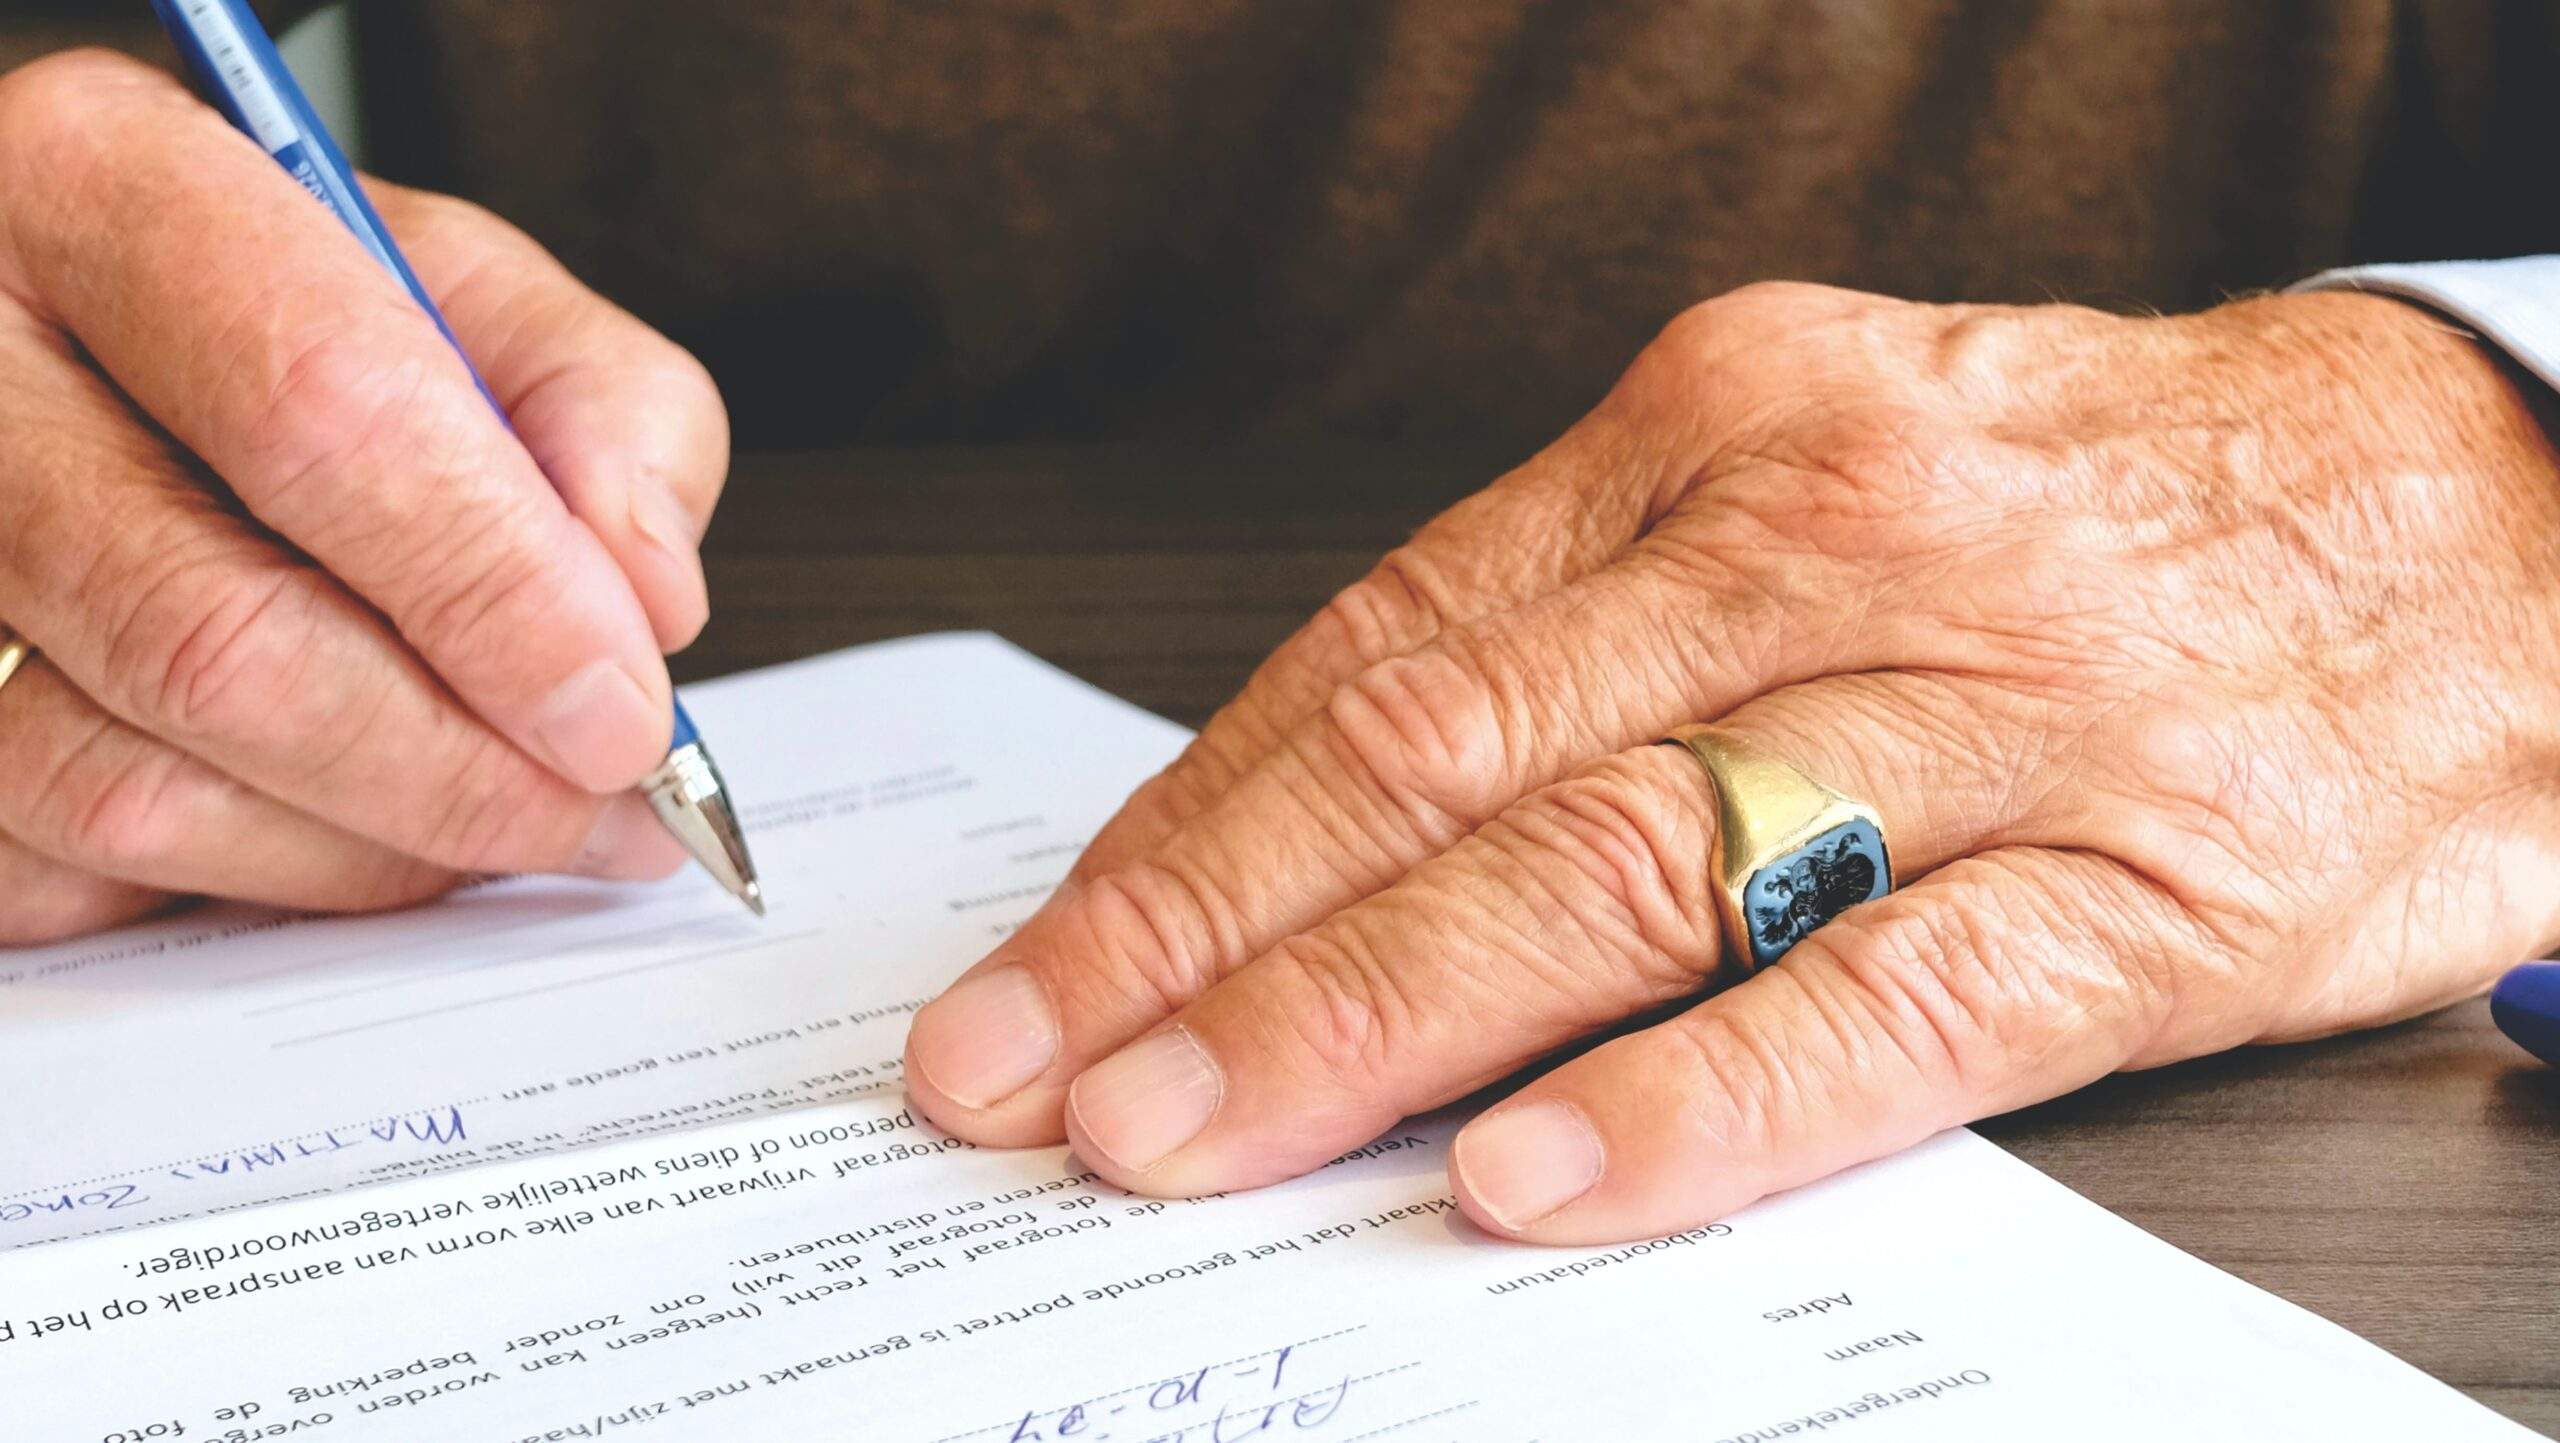 ¿Qué pasa cuando firmas un pagaré?: manos de hombre firmando un título de crédito.